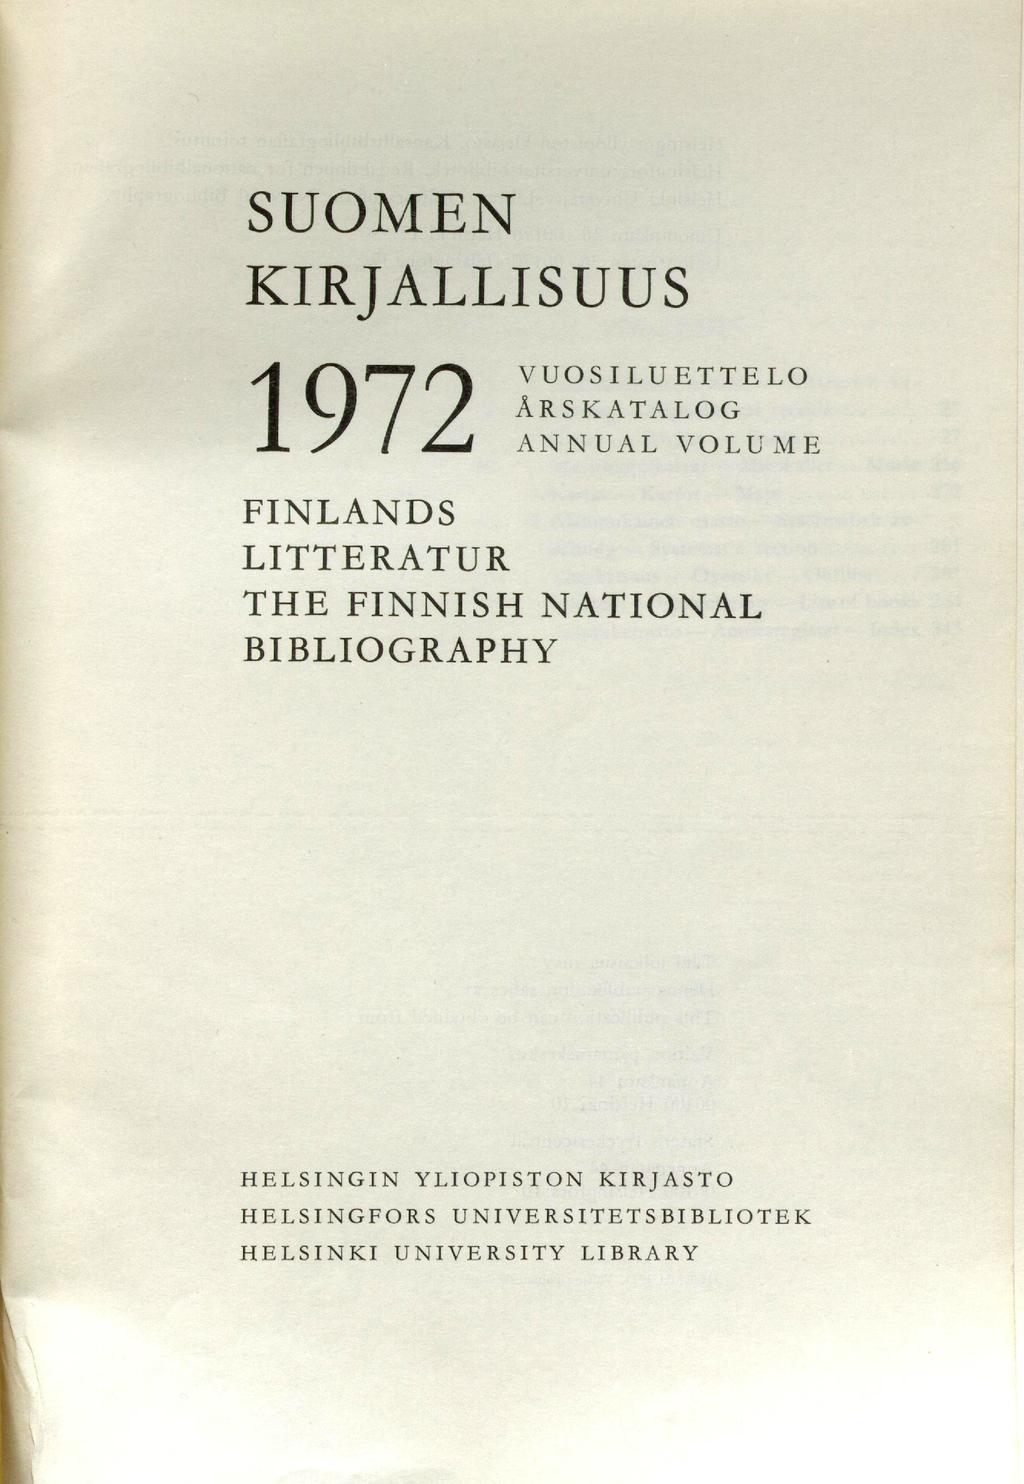 SUOMEN KIRJALLISUUS 1972 VUOSILUETTELO ÅRSKATALOG ANNUAL VOLUME FINLANDS LITTERATUR THE FINNISH NATIONAL